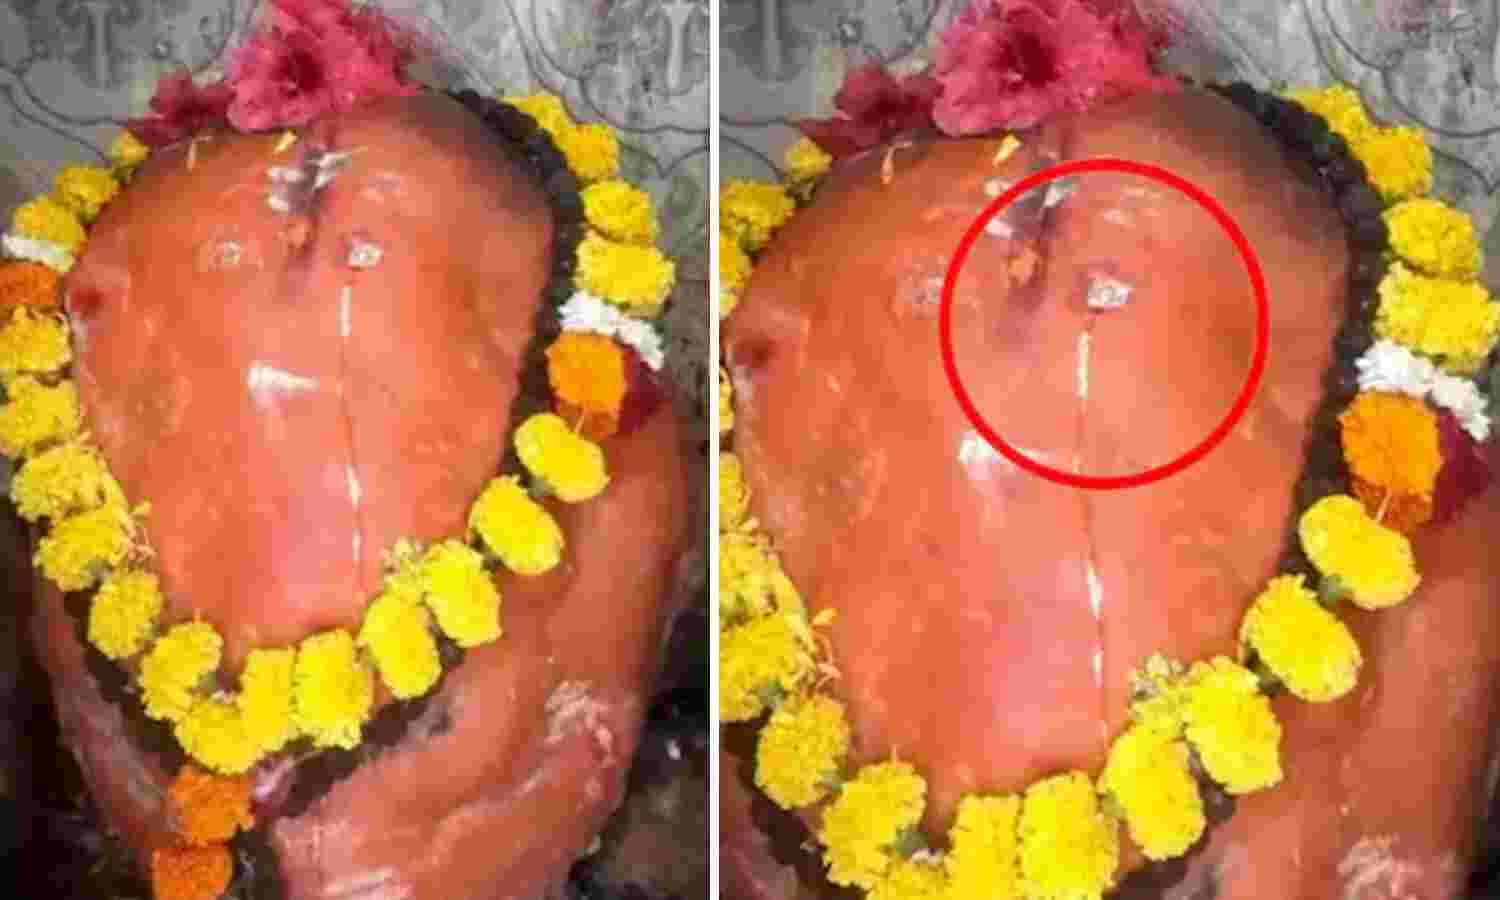 Maharashtra News : गणपति की आंखों से निकला आंसू, मंदिर में उमड़ी भक्तों की भीड़, सोशल मीडिया पर वीडियो वायरल